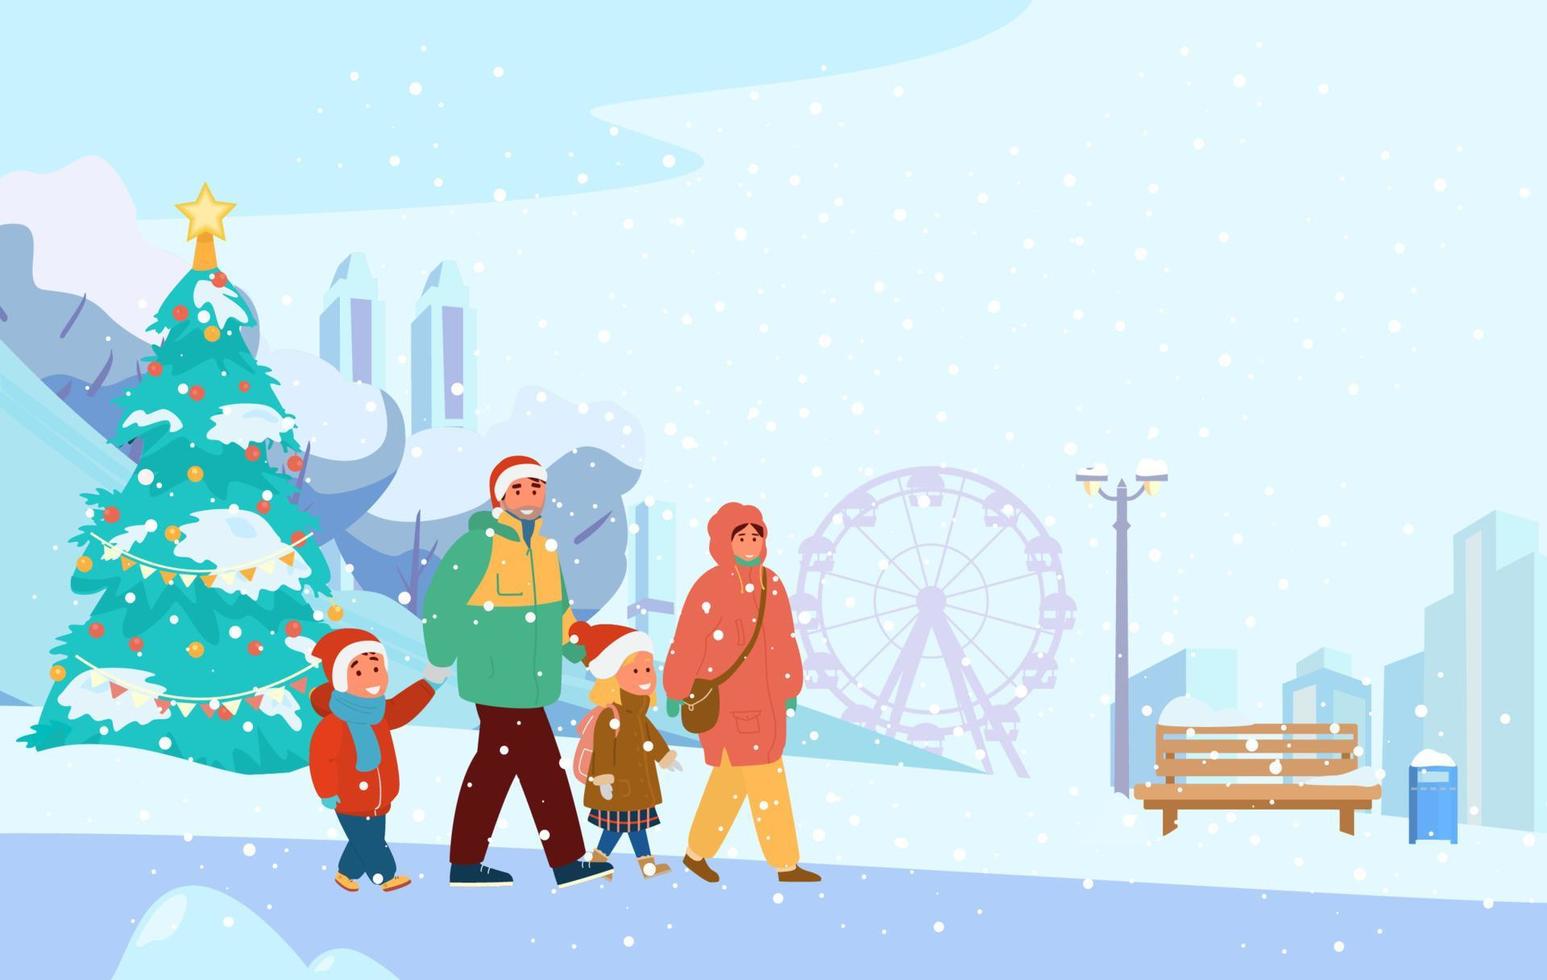 cenário de parque de inverno com família feliz em chapéus de Papai Noel andando. silhueta da cidade, árvore de natal, banco, árvores nevadas. ilustração vetorial plana. vetor